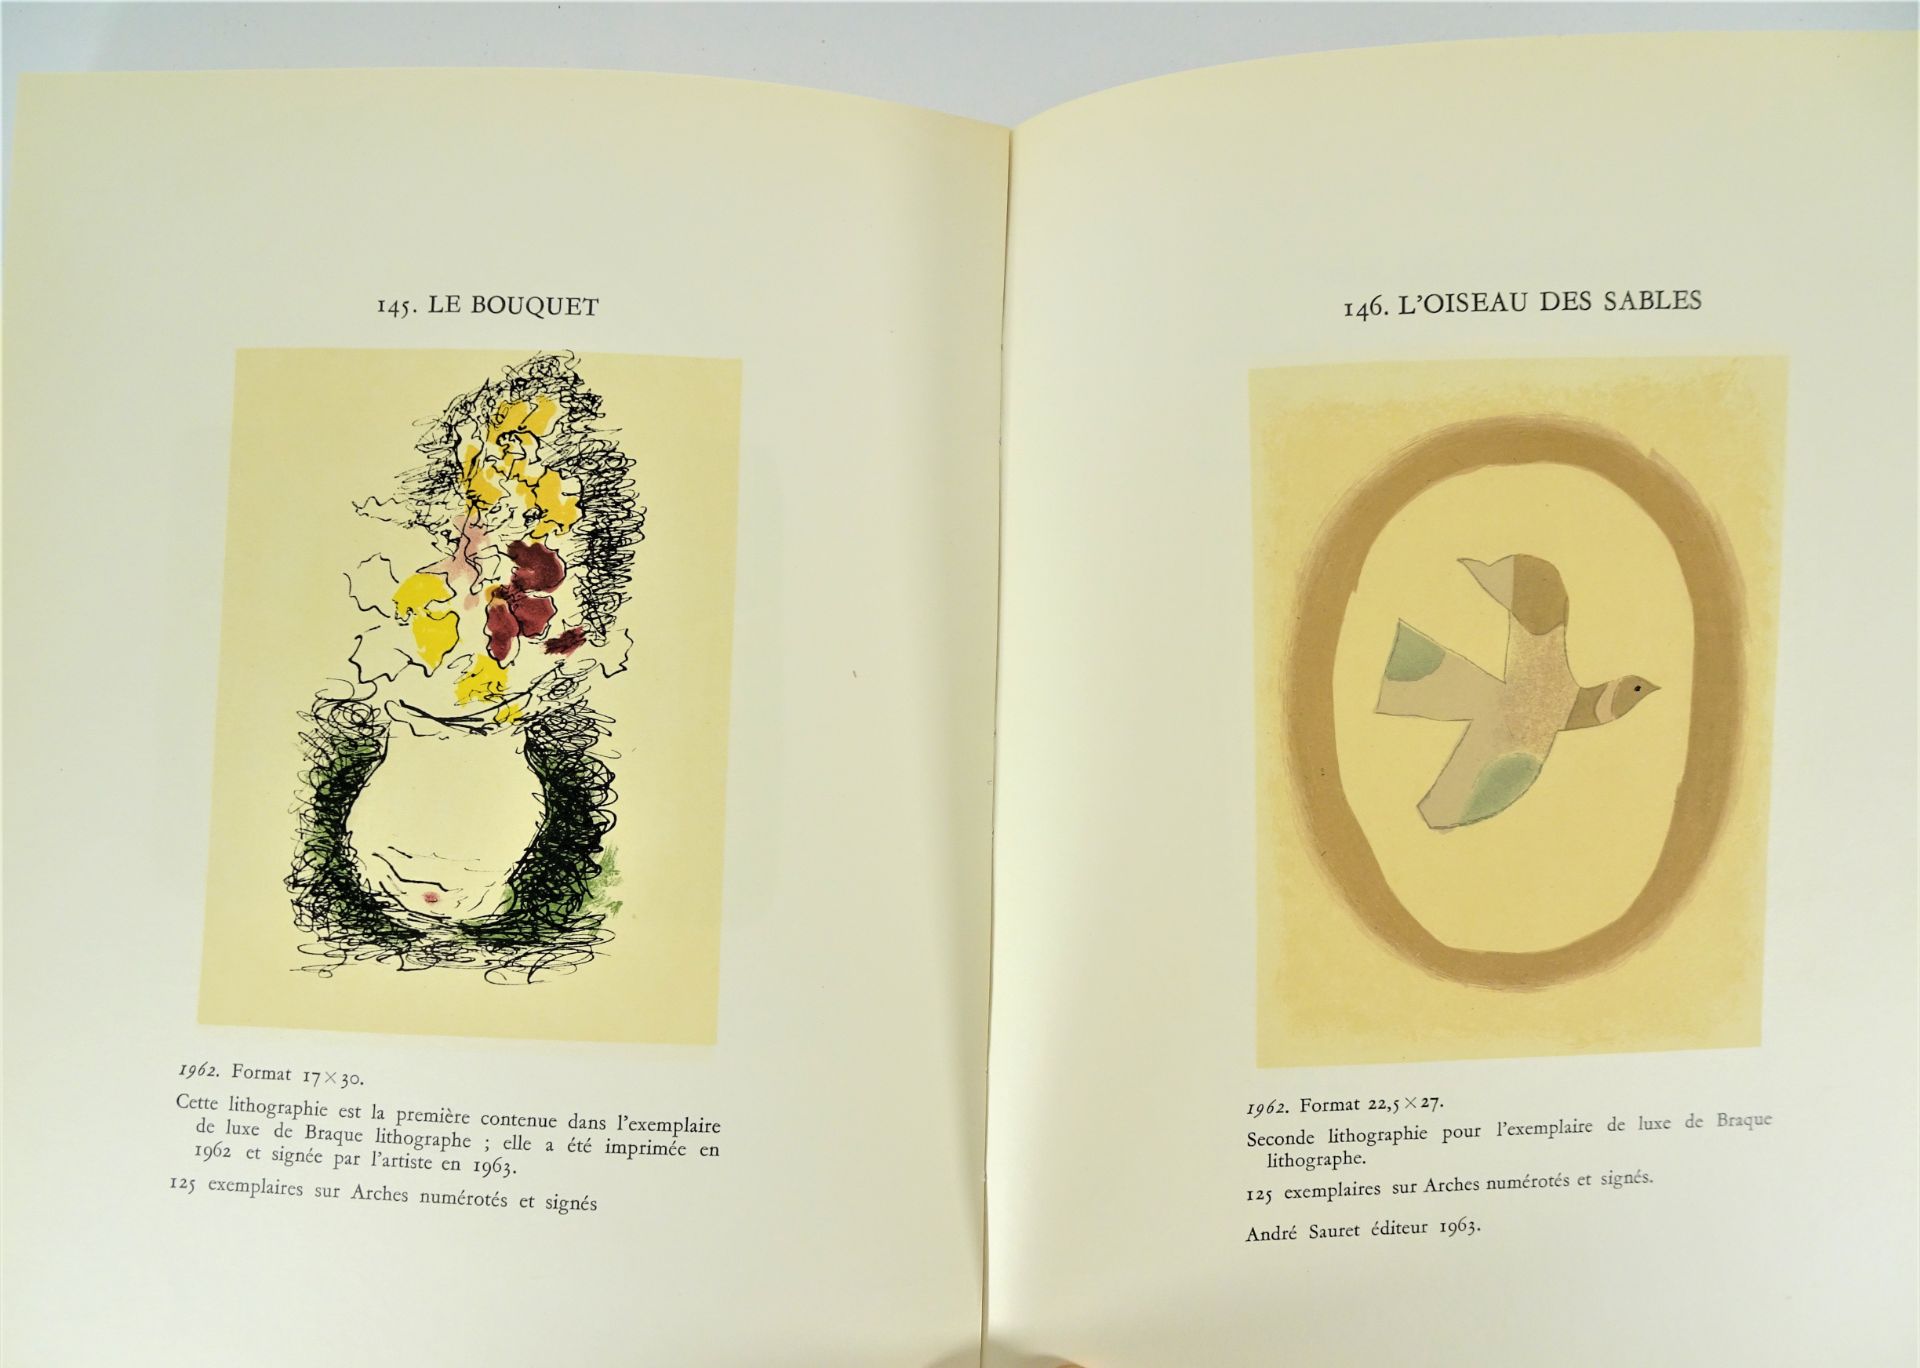 |Art| George Braque, "Braque lithographe", 1963, édition limitée. Fernand Mourlot, catalogue - Image 10 of 12